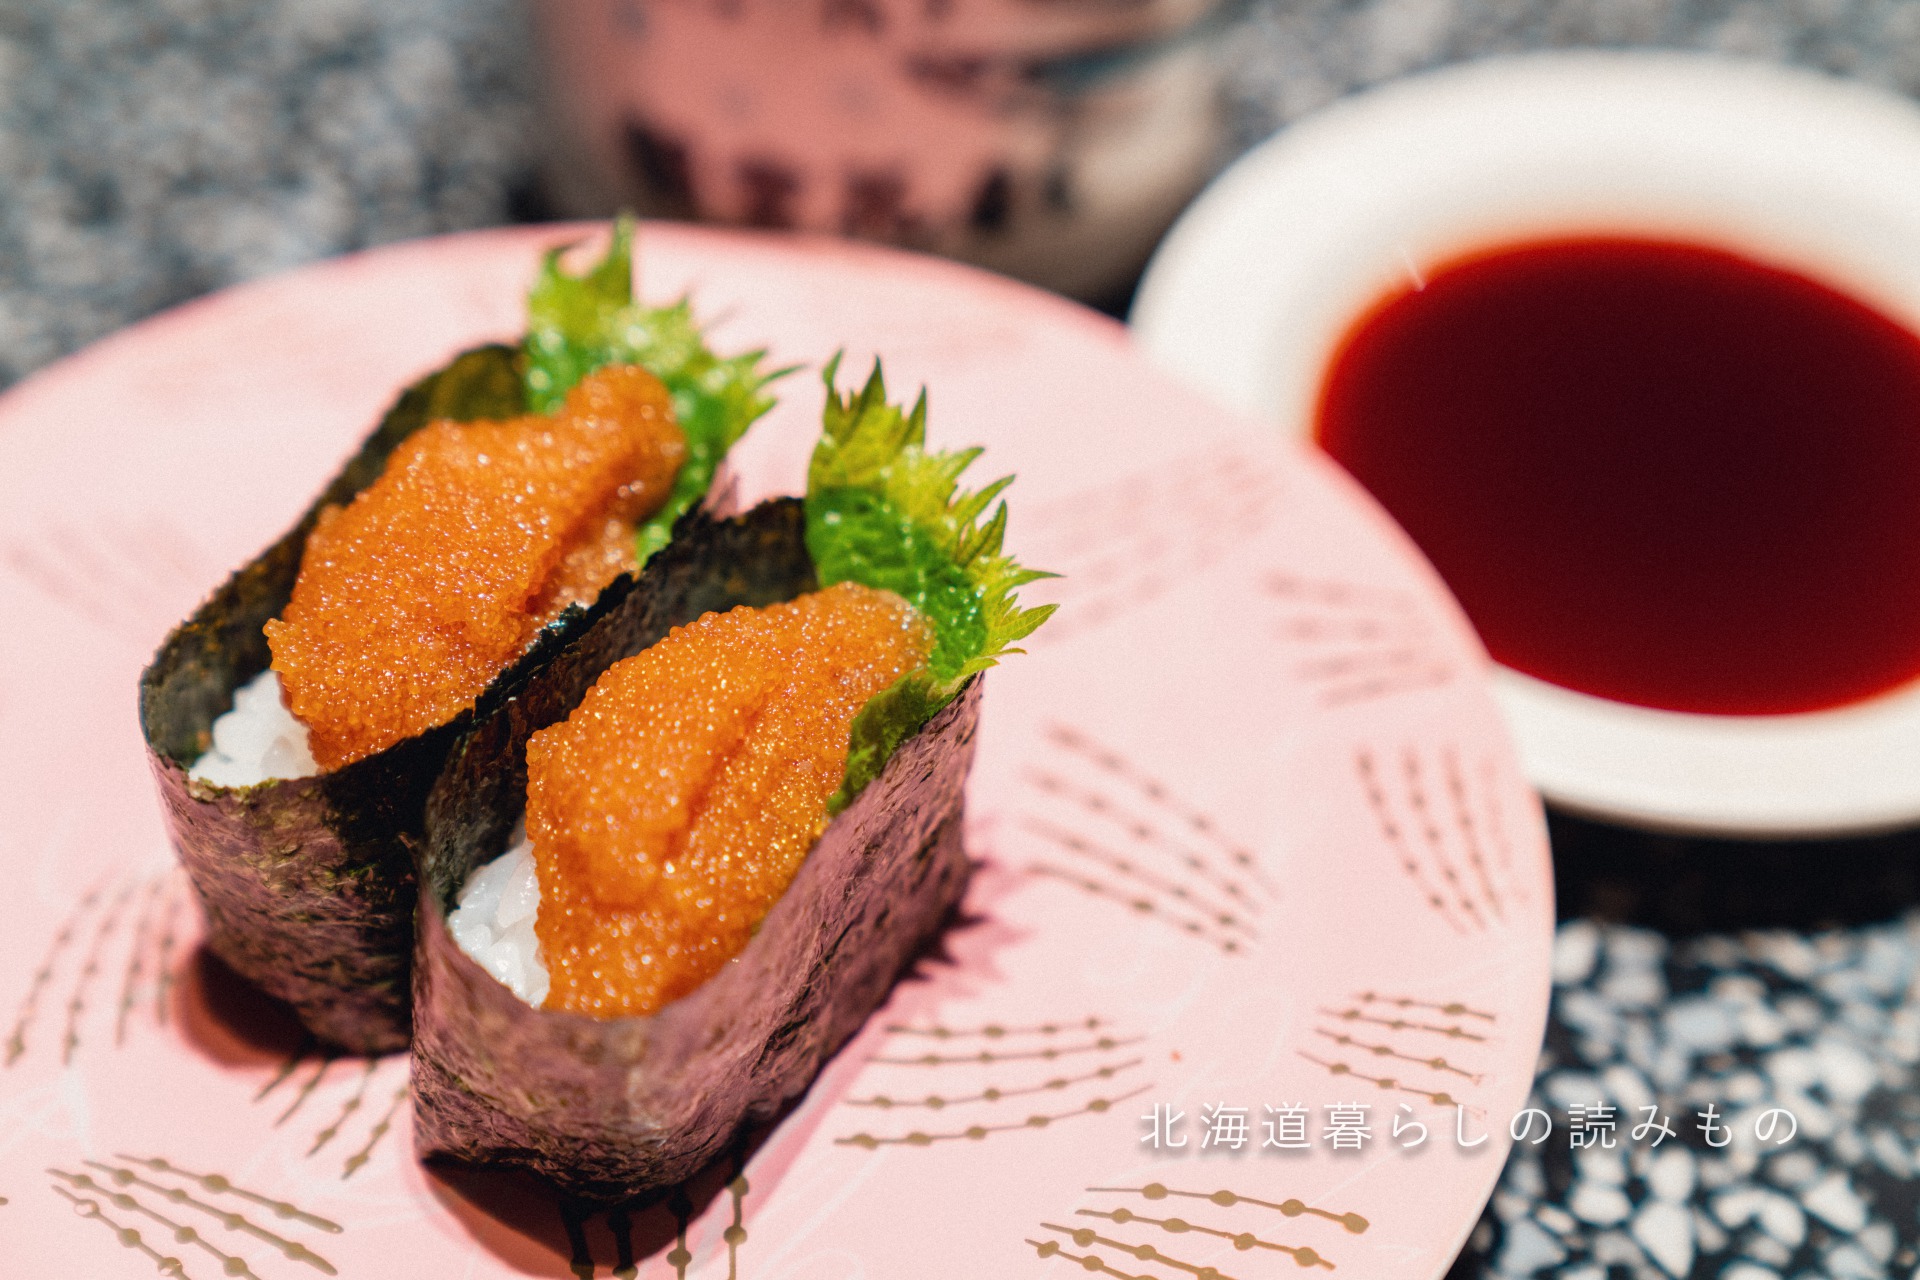 回転寿司 根室花まるのメニュー「こまい子醤油漬け」の写真